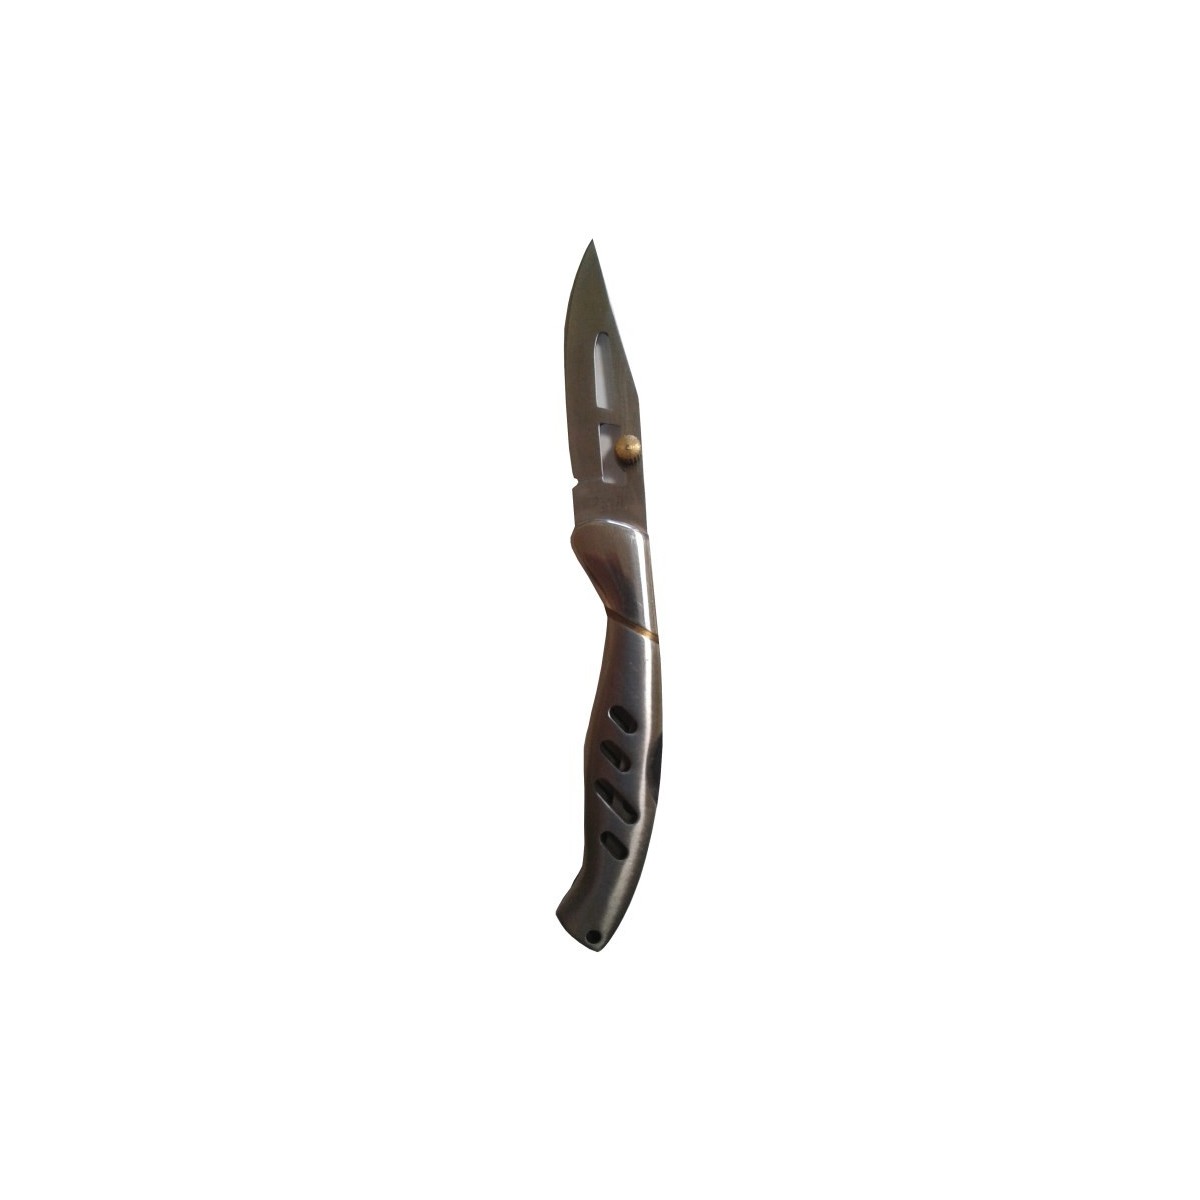 Μαχαίρι τσέπης Ausonia ανοξείδοτο πτυσόμενο